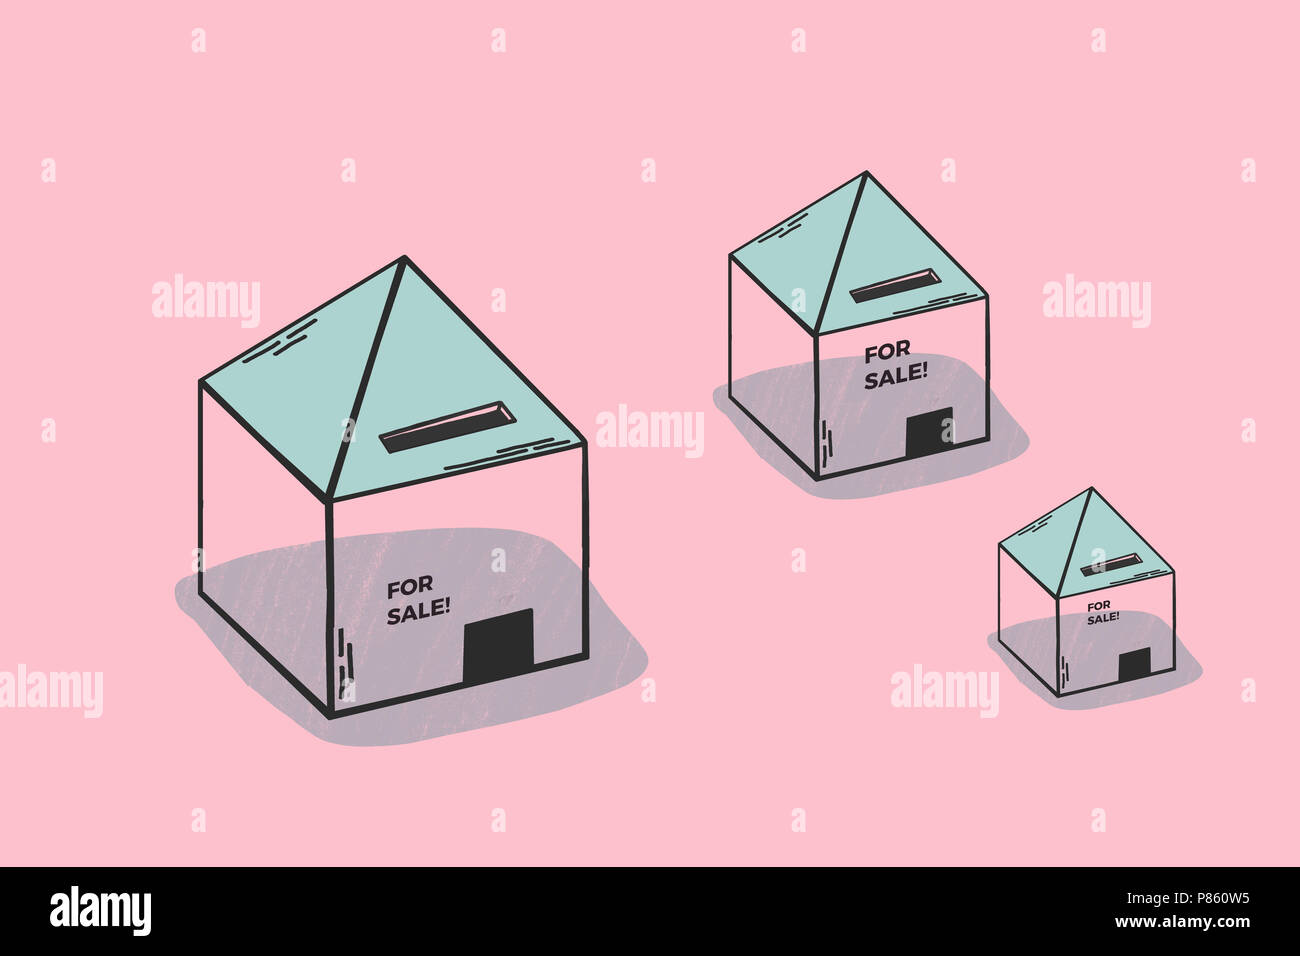 Maisons à vendre. Illustration conceptuelle minimaliste sur l'immobilier et l'investissement. Voir les maisons à vendre. Les couleurs rose et bleu d'encre. Banque D'Images